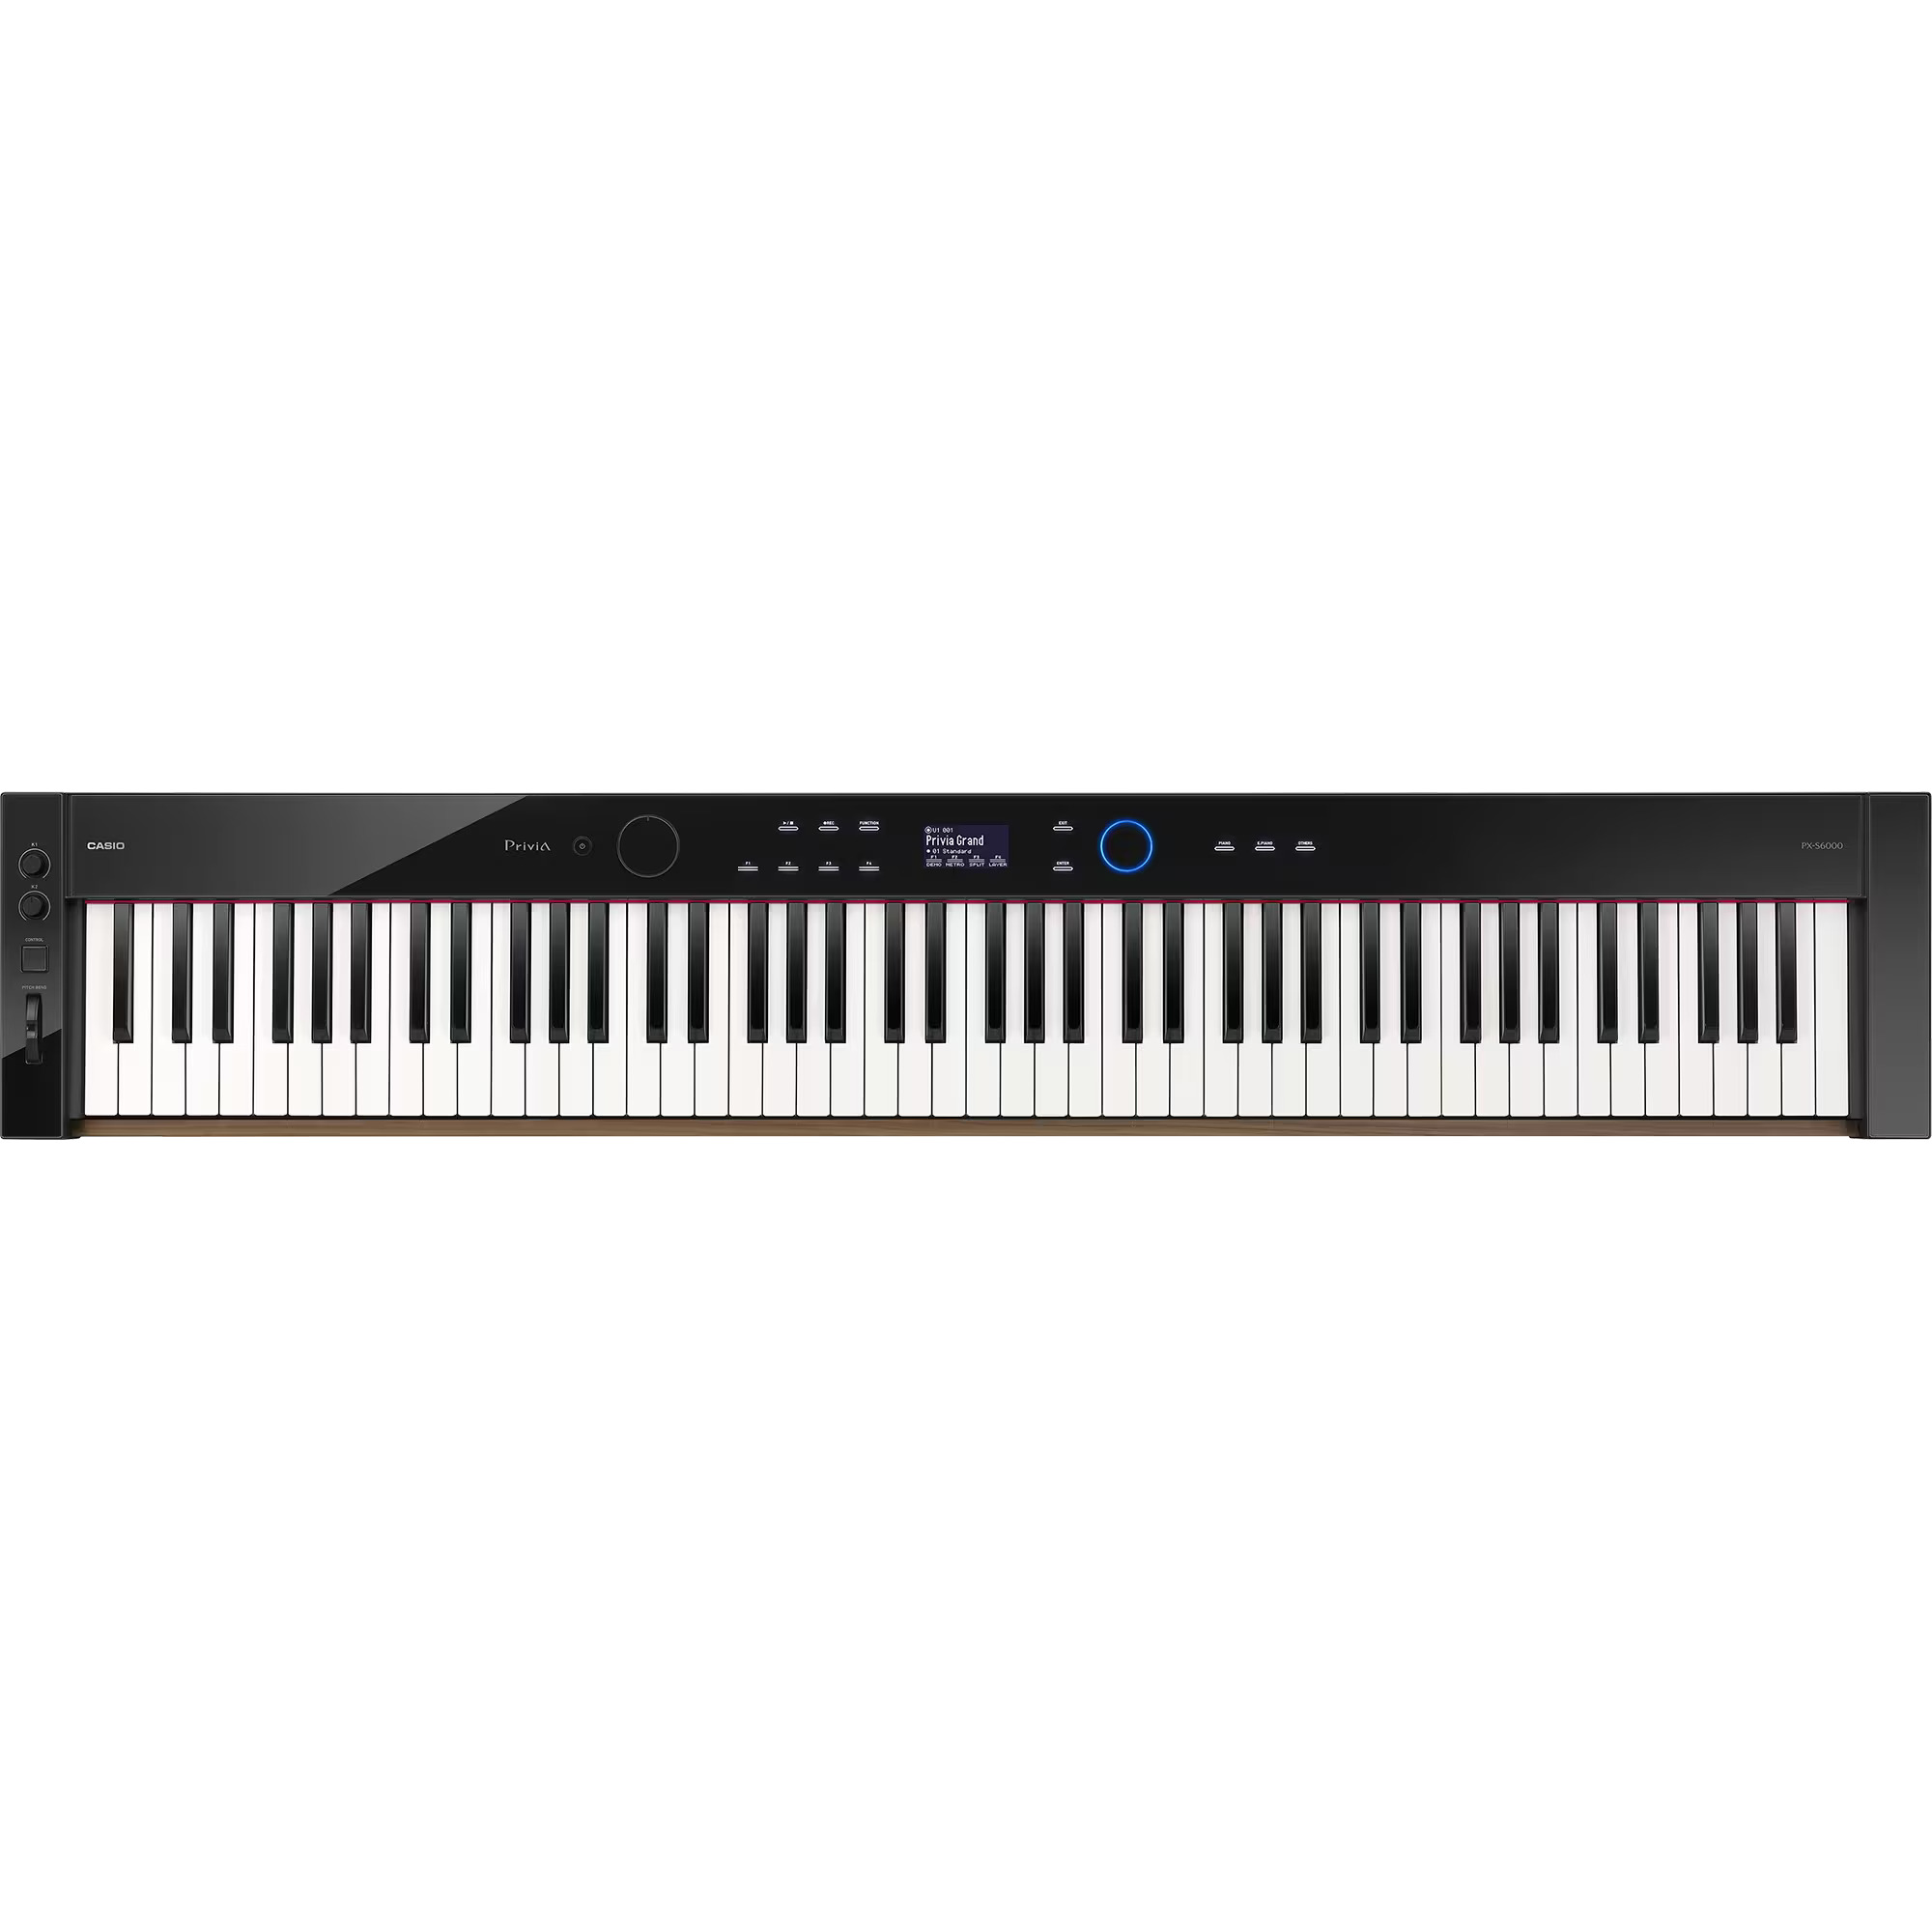 Цифровые пианино Casio PX-S6000BK любимые мелодии и ритмы популярная музыка для фортепиано